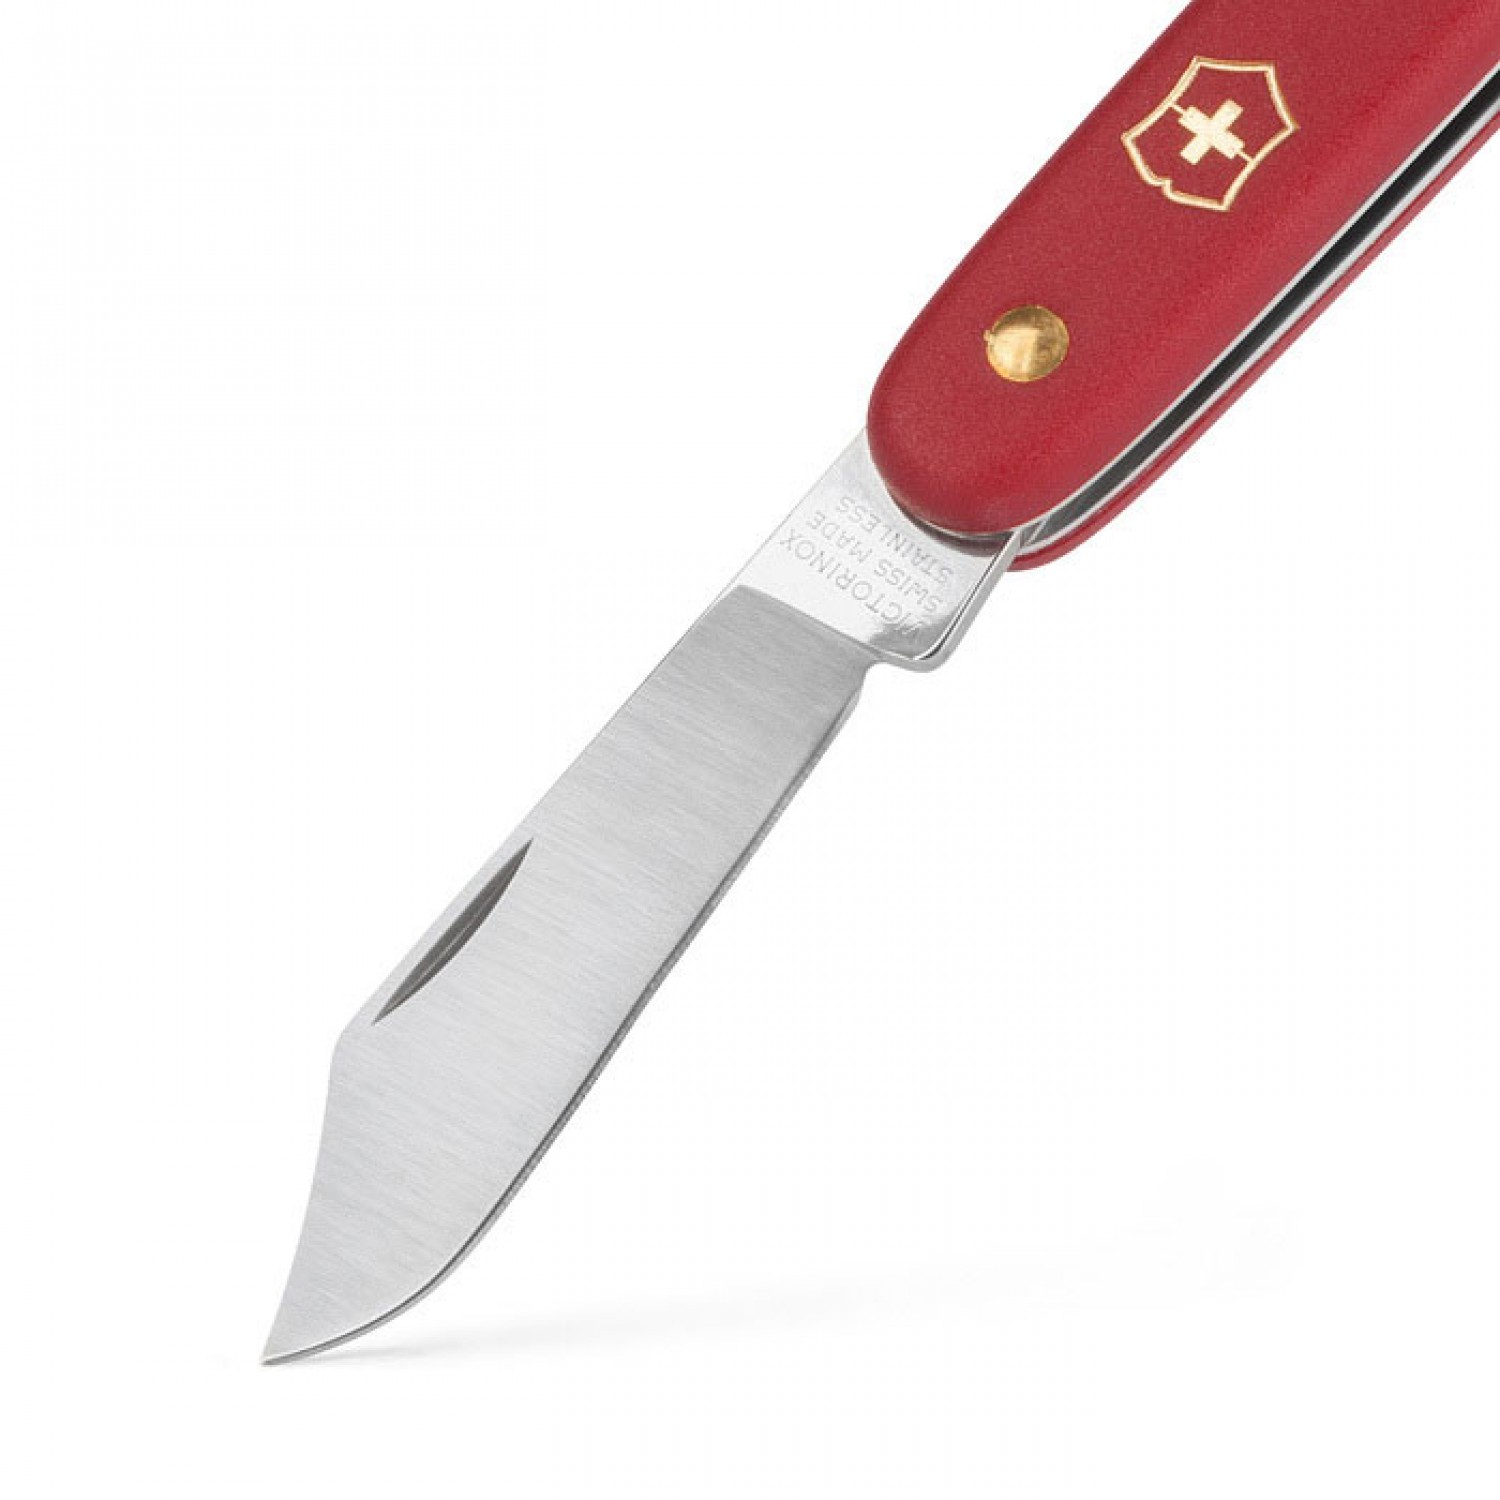 چاقوی پیوند زنی سوئیسی فلکو (ویکتورینوکس) مدل 3.9010